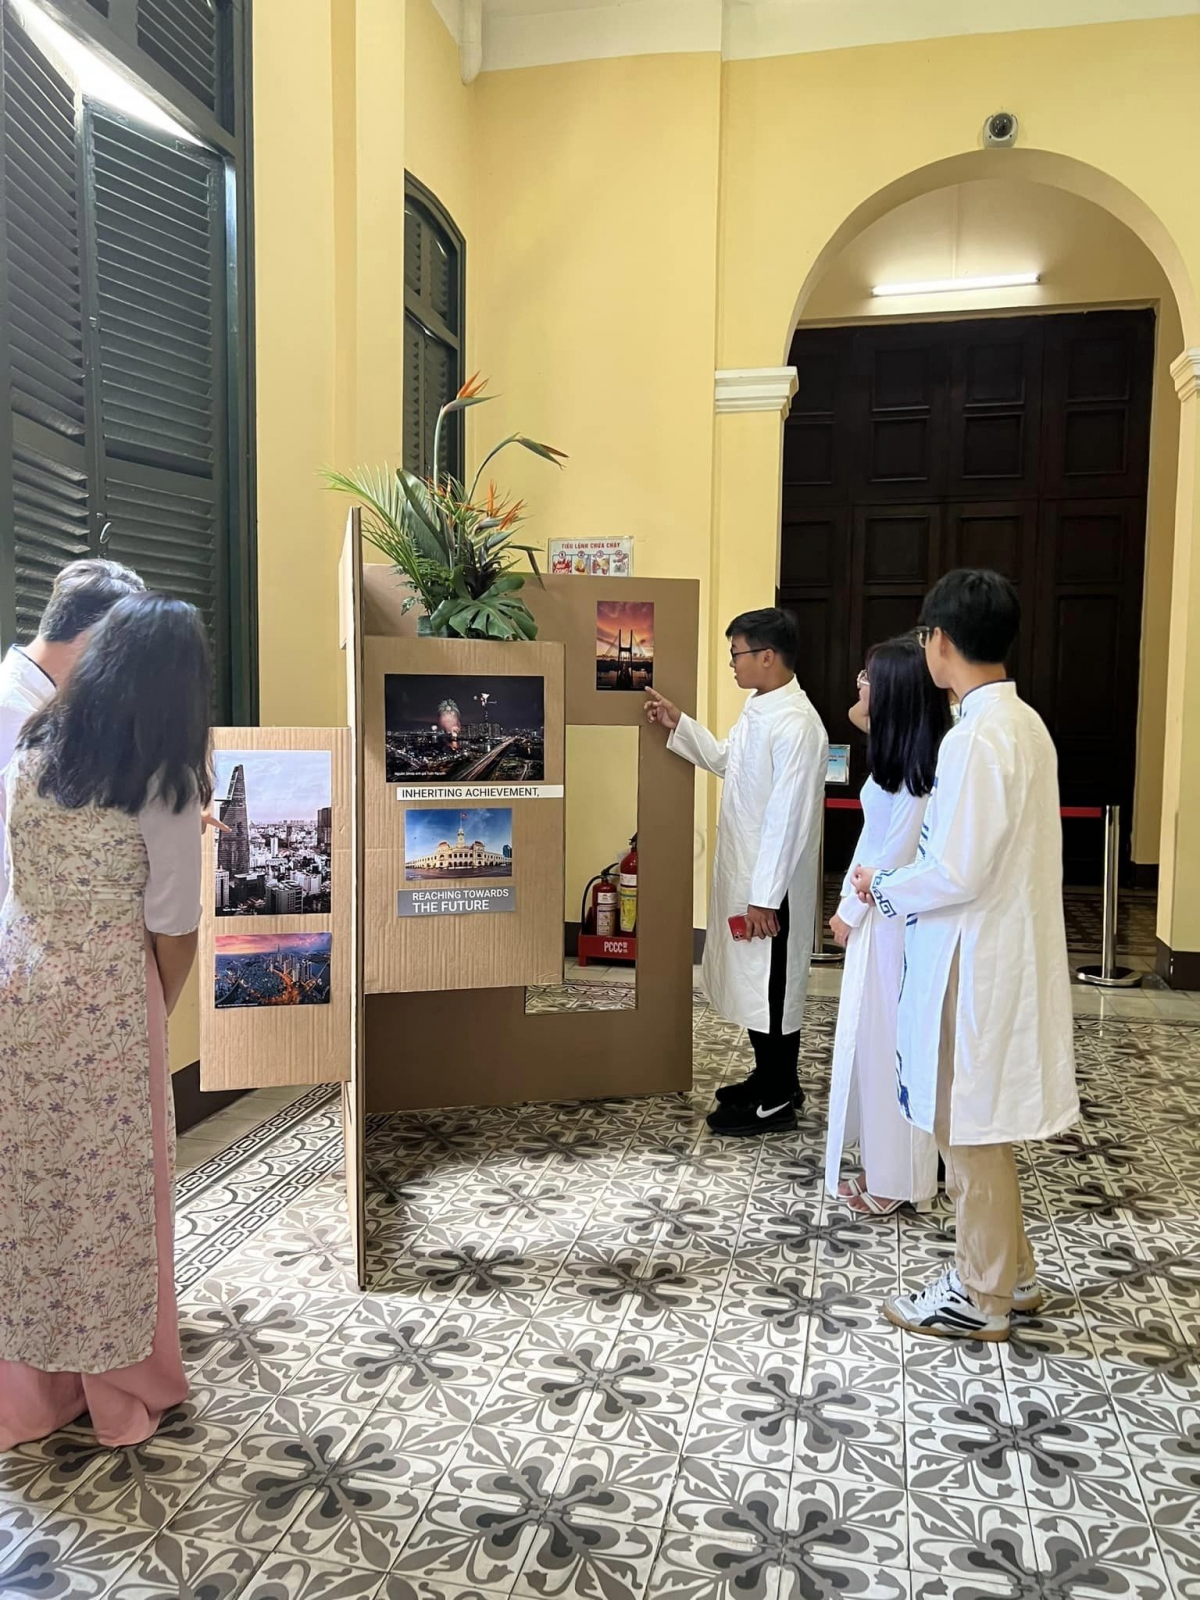 Du khách xem triển lãm các công trình kiến trúc nghệ thuật tại thành phố trong khuôn khổ chương trình tham quan trụ sở HĐND-UBND thành phố Hồ Chí Minh. Ảnh: BTC